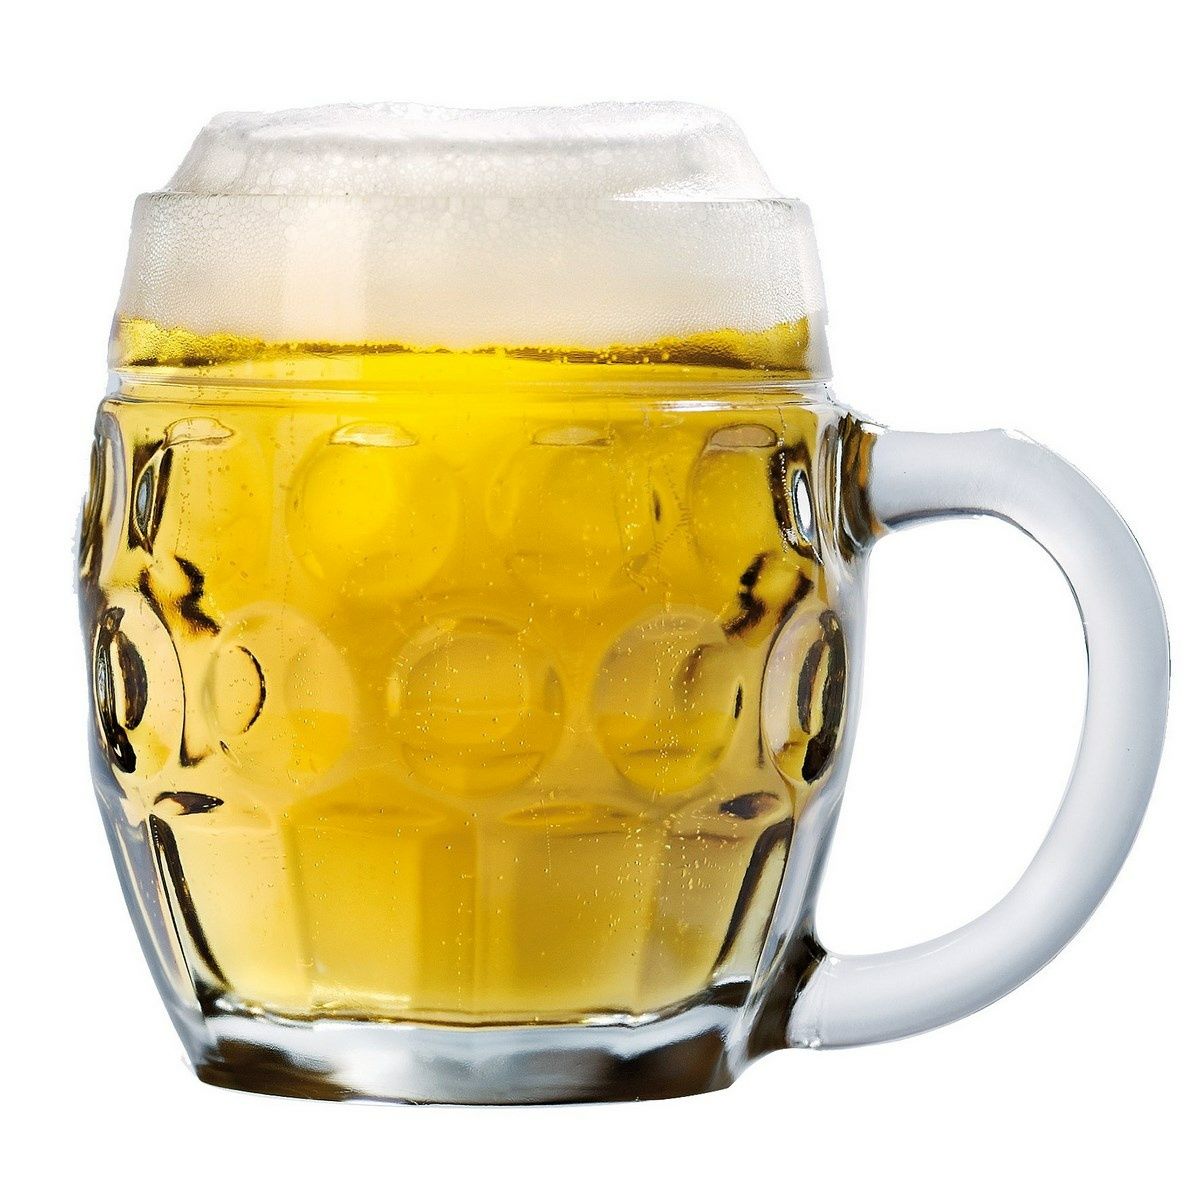 Pivní sklenice s uchem TÜBINGER, 0,5 l - 4home.cz